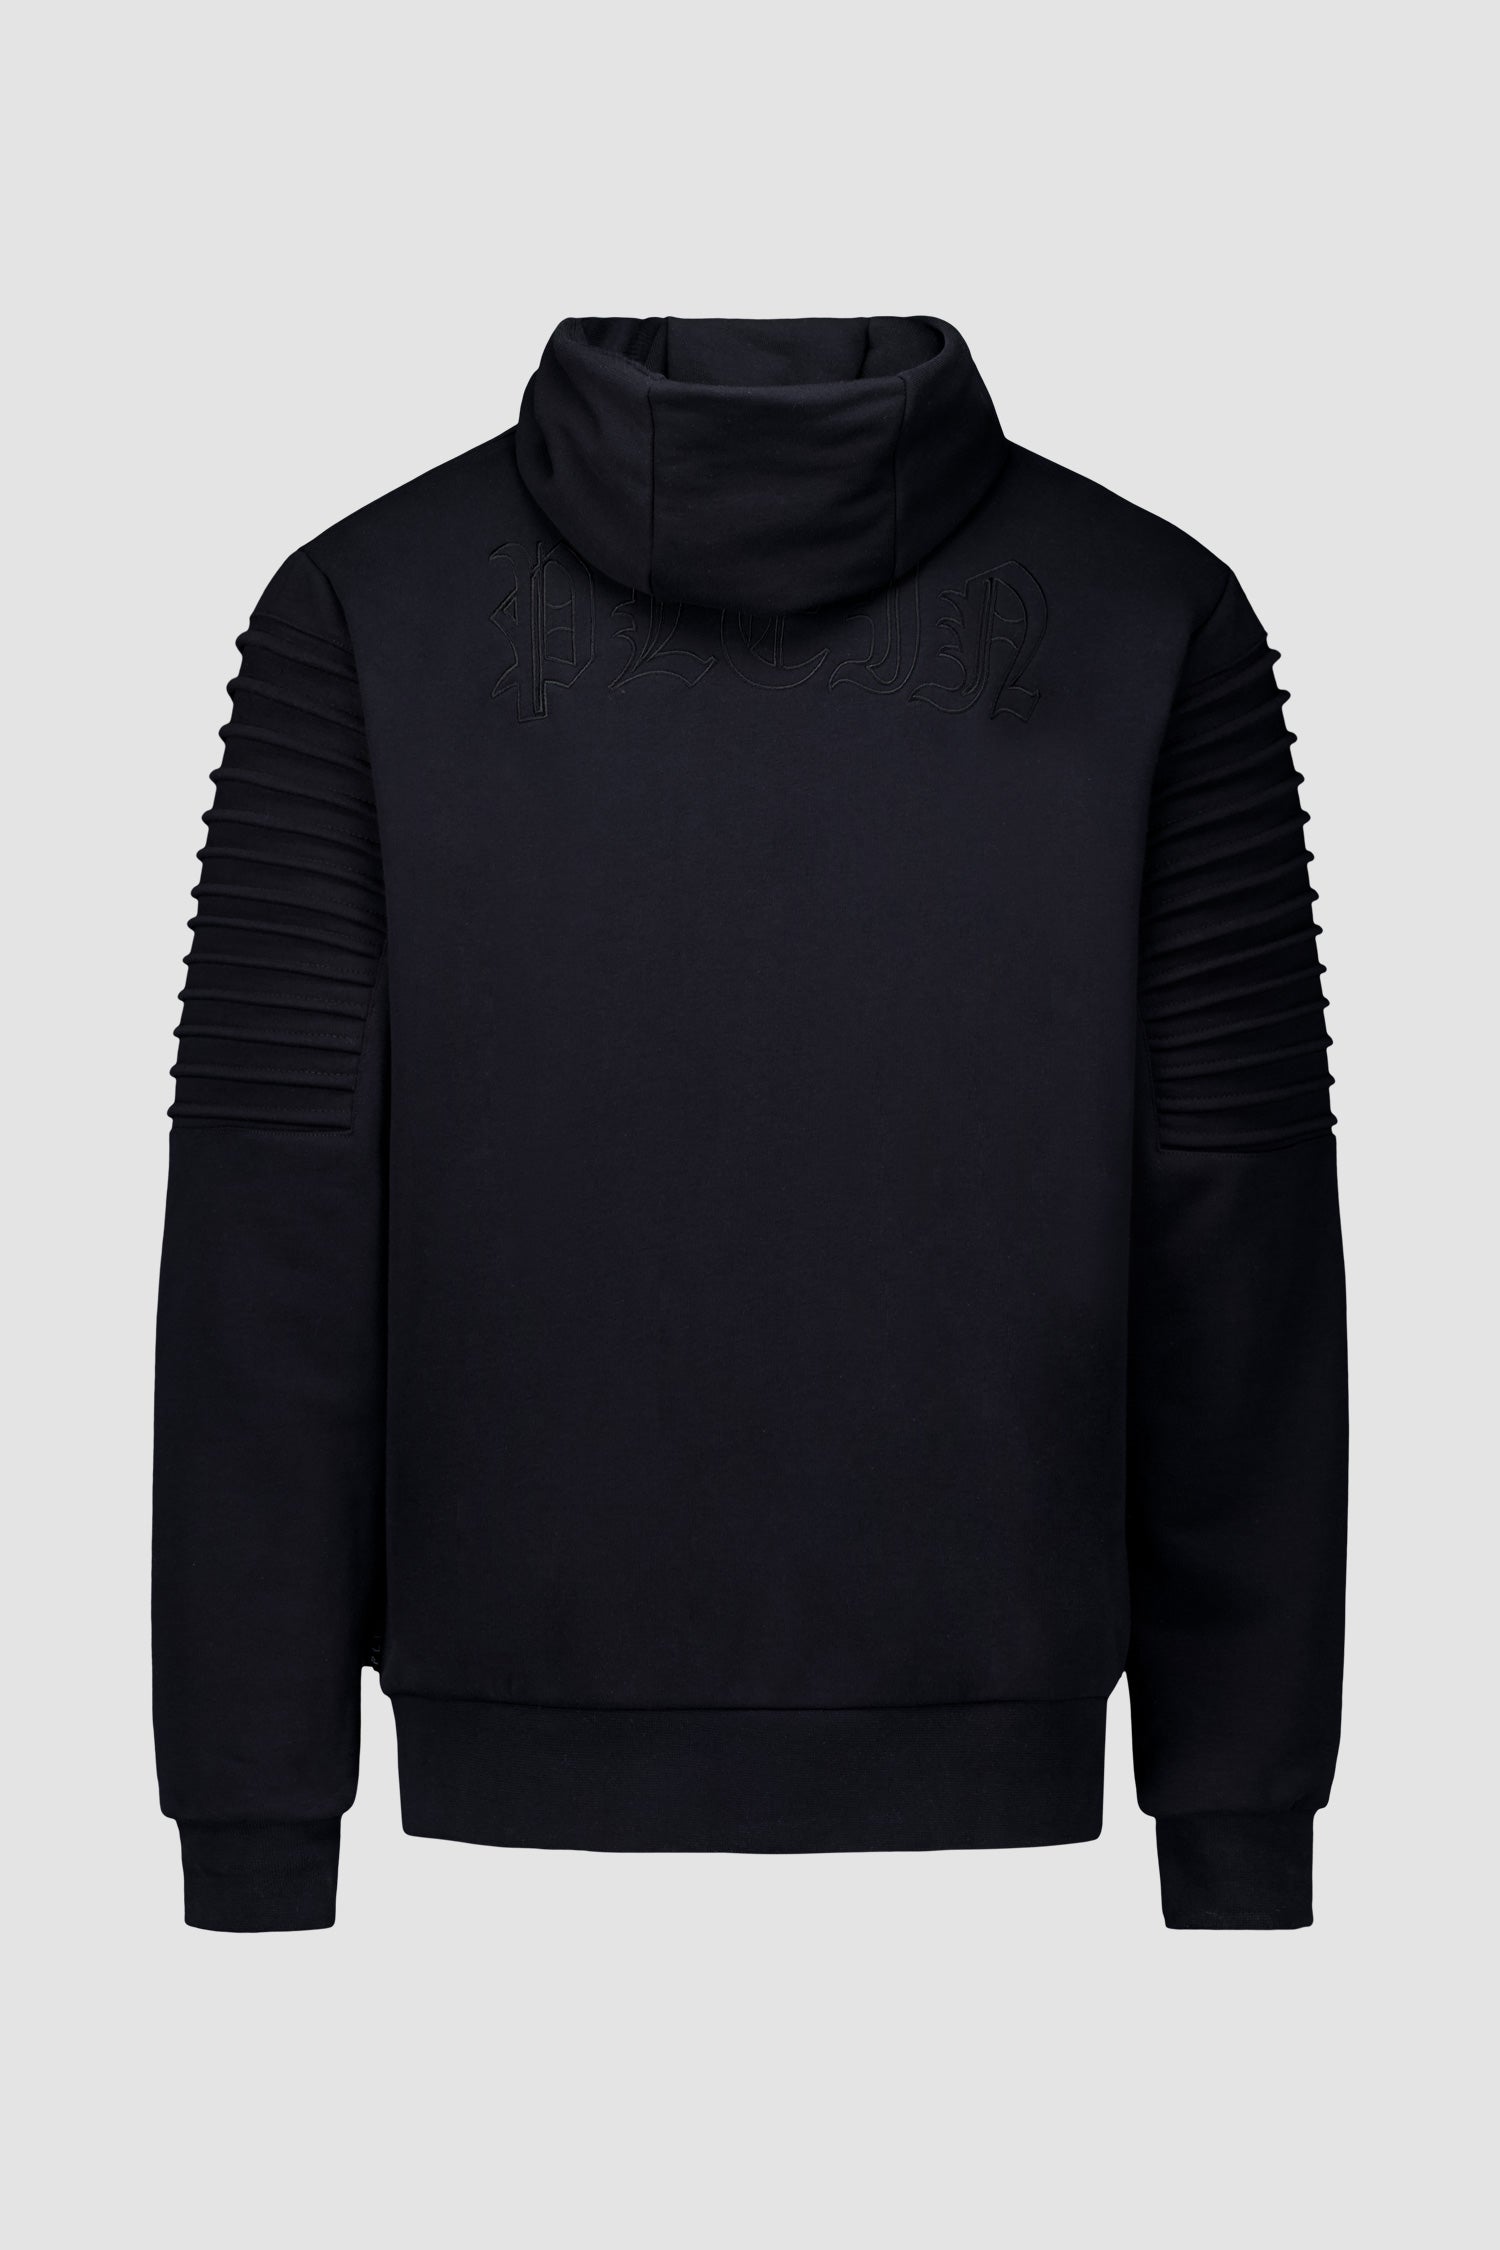 Philipp Plein Black Hoodie Sweatshirt Gothic Plein